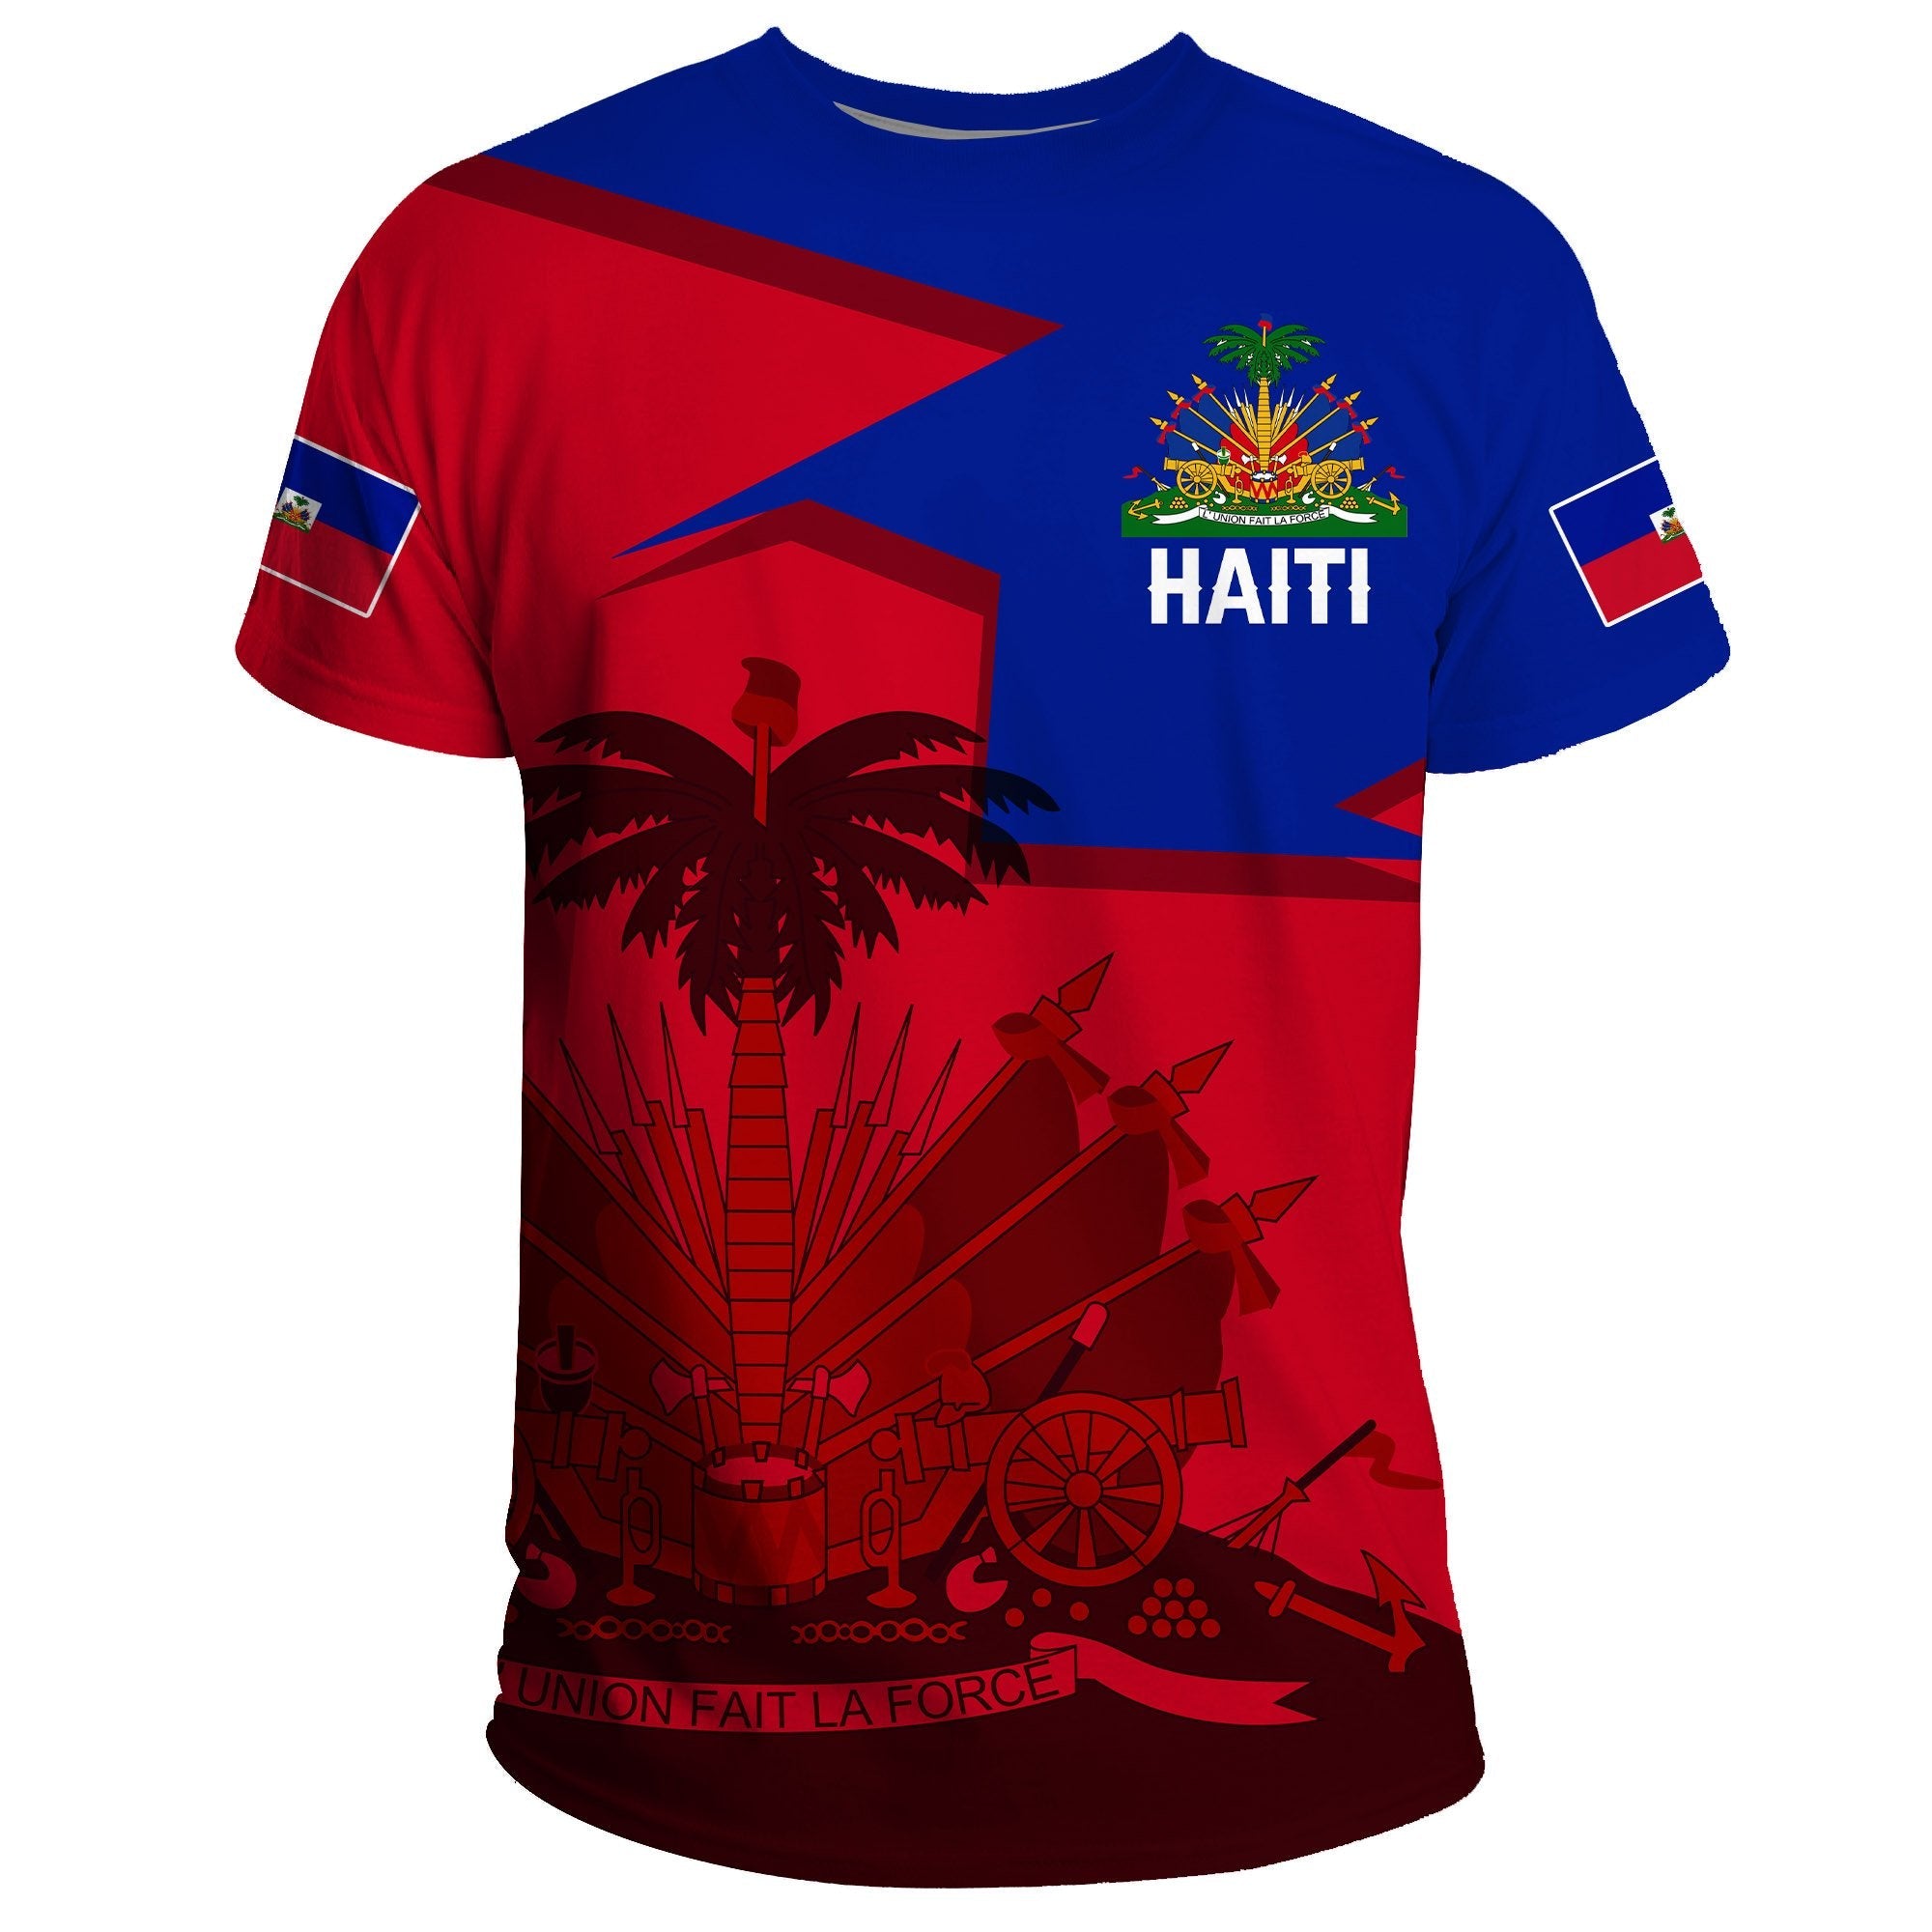 haiti-t-shirt-home